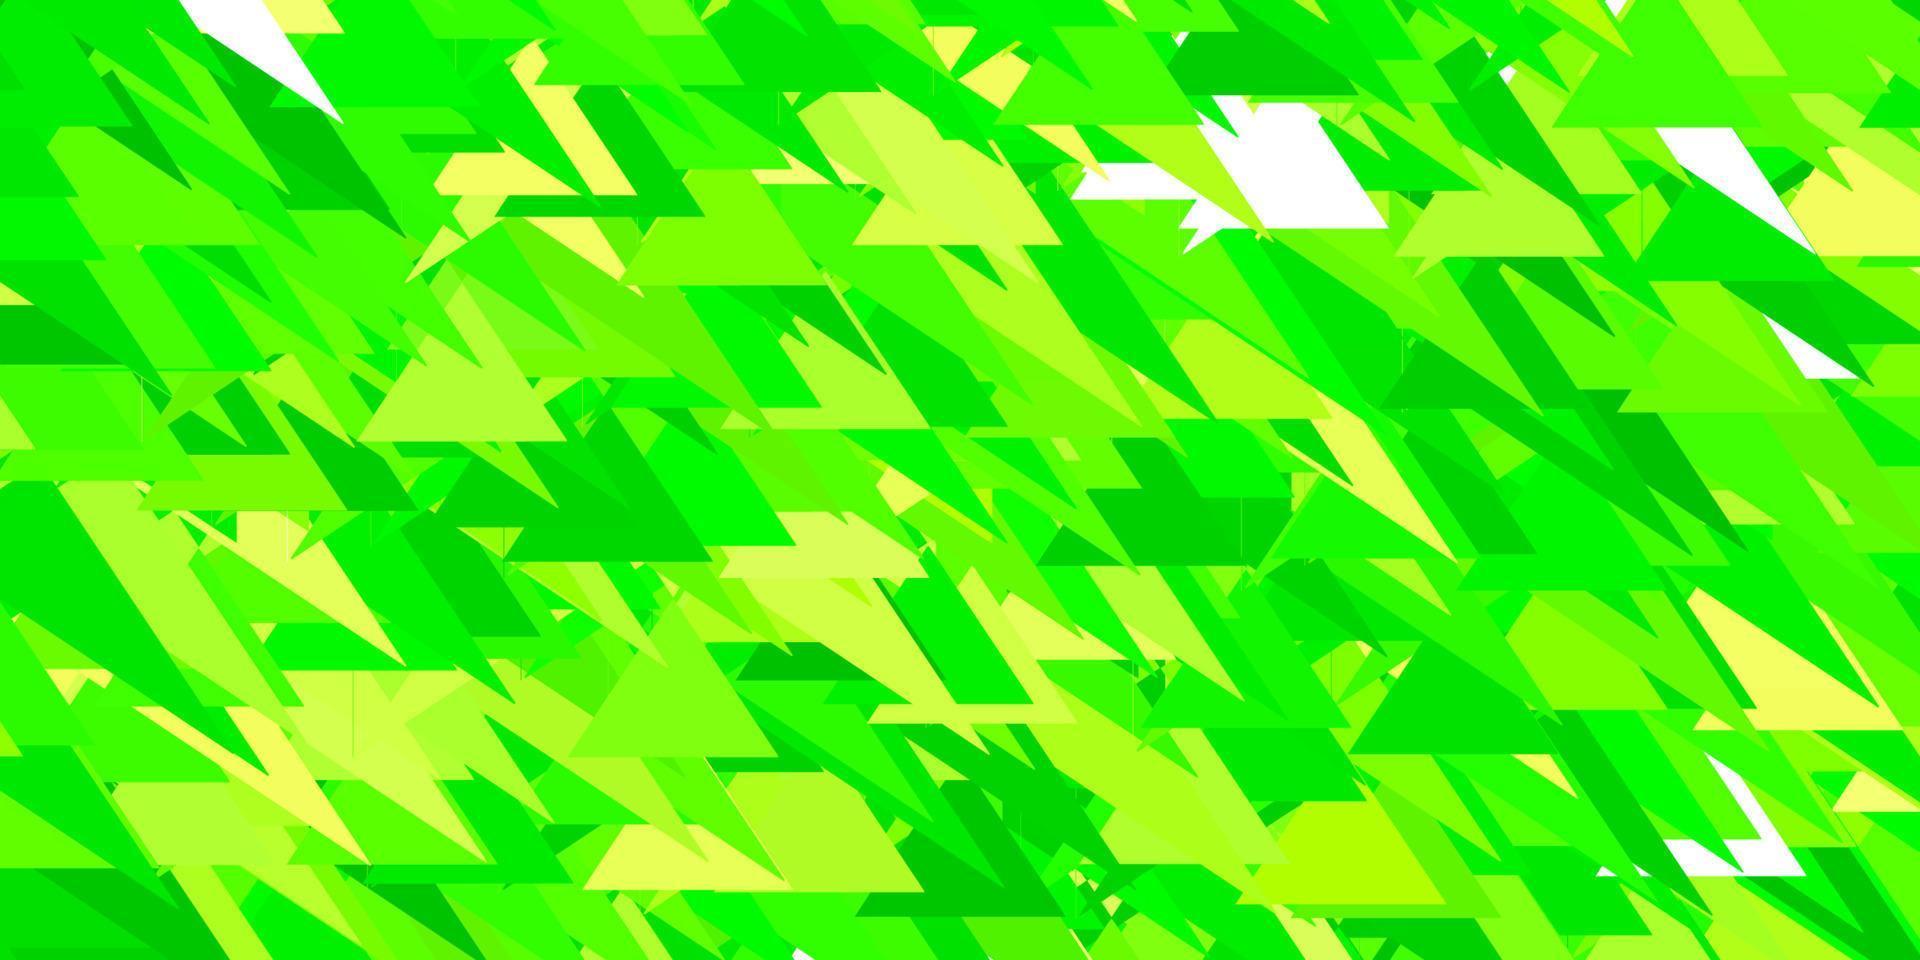 fond de vecteur vert clair, jaune avec des triangles.